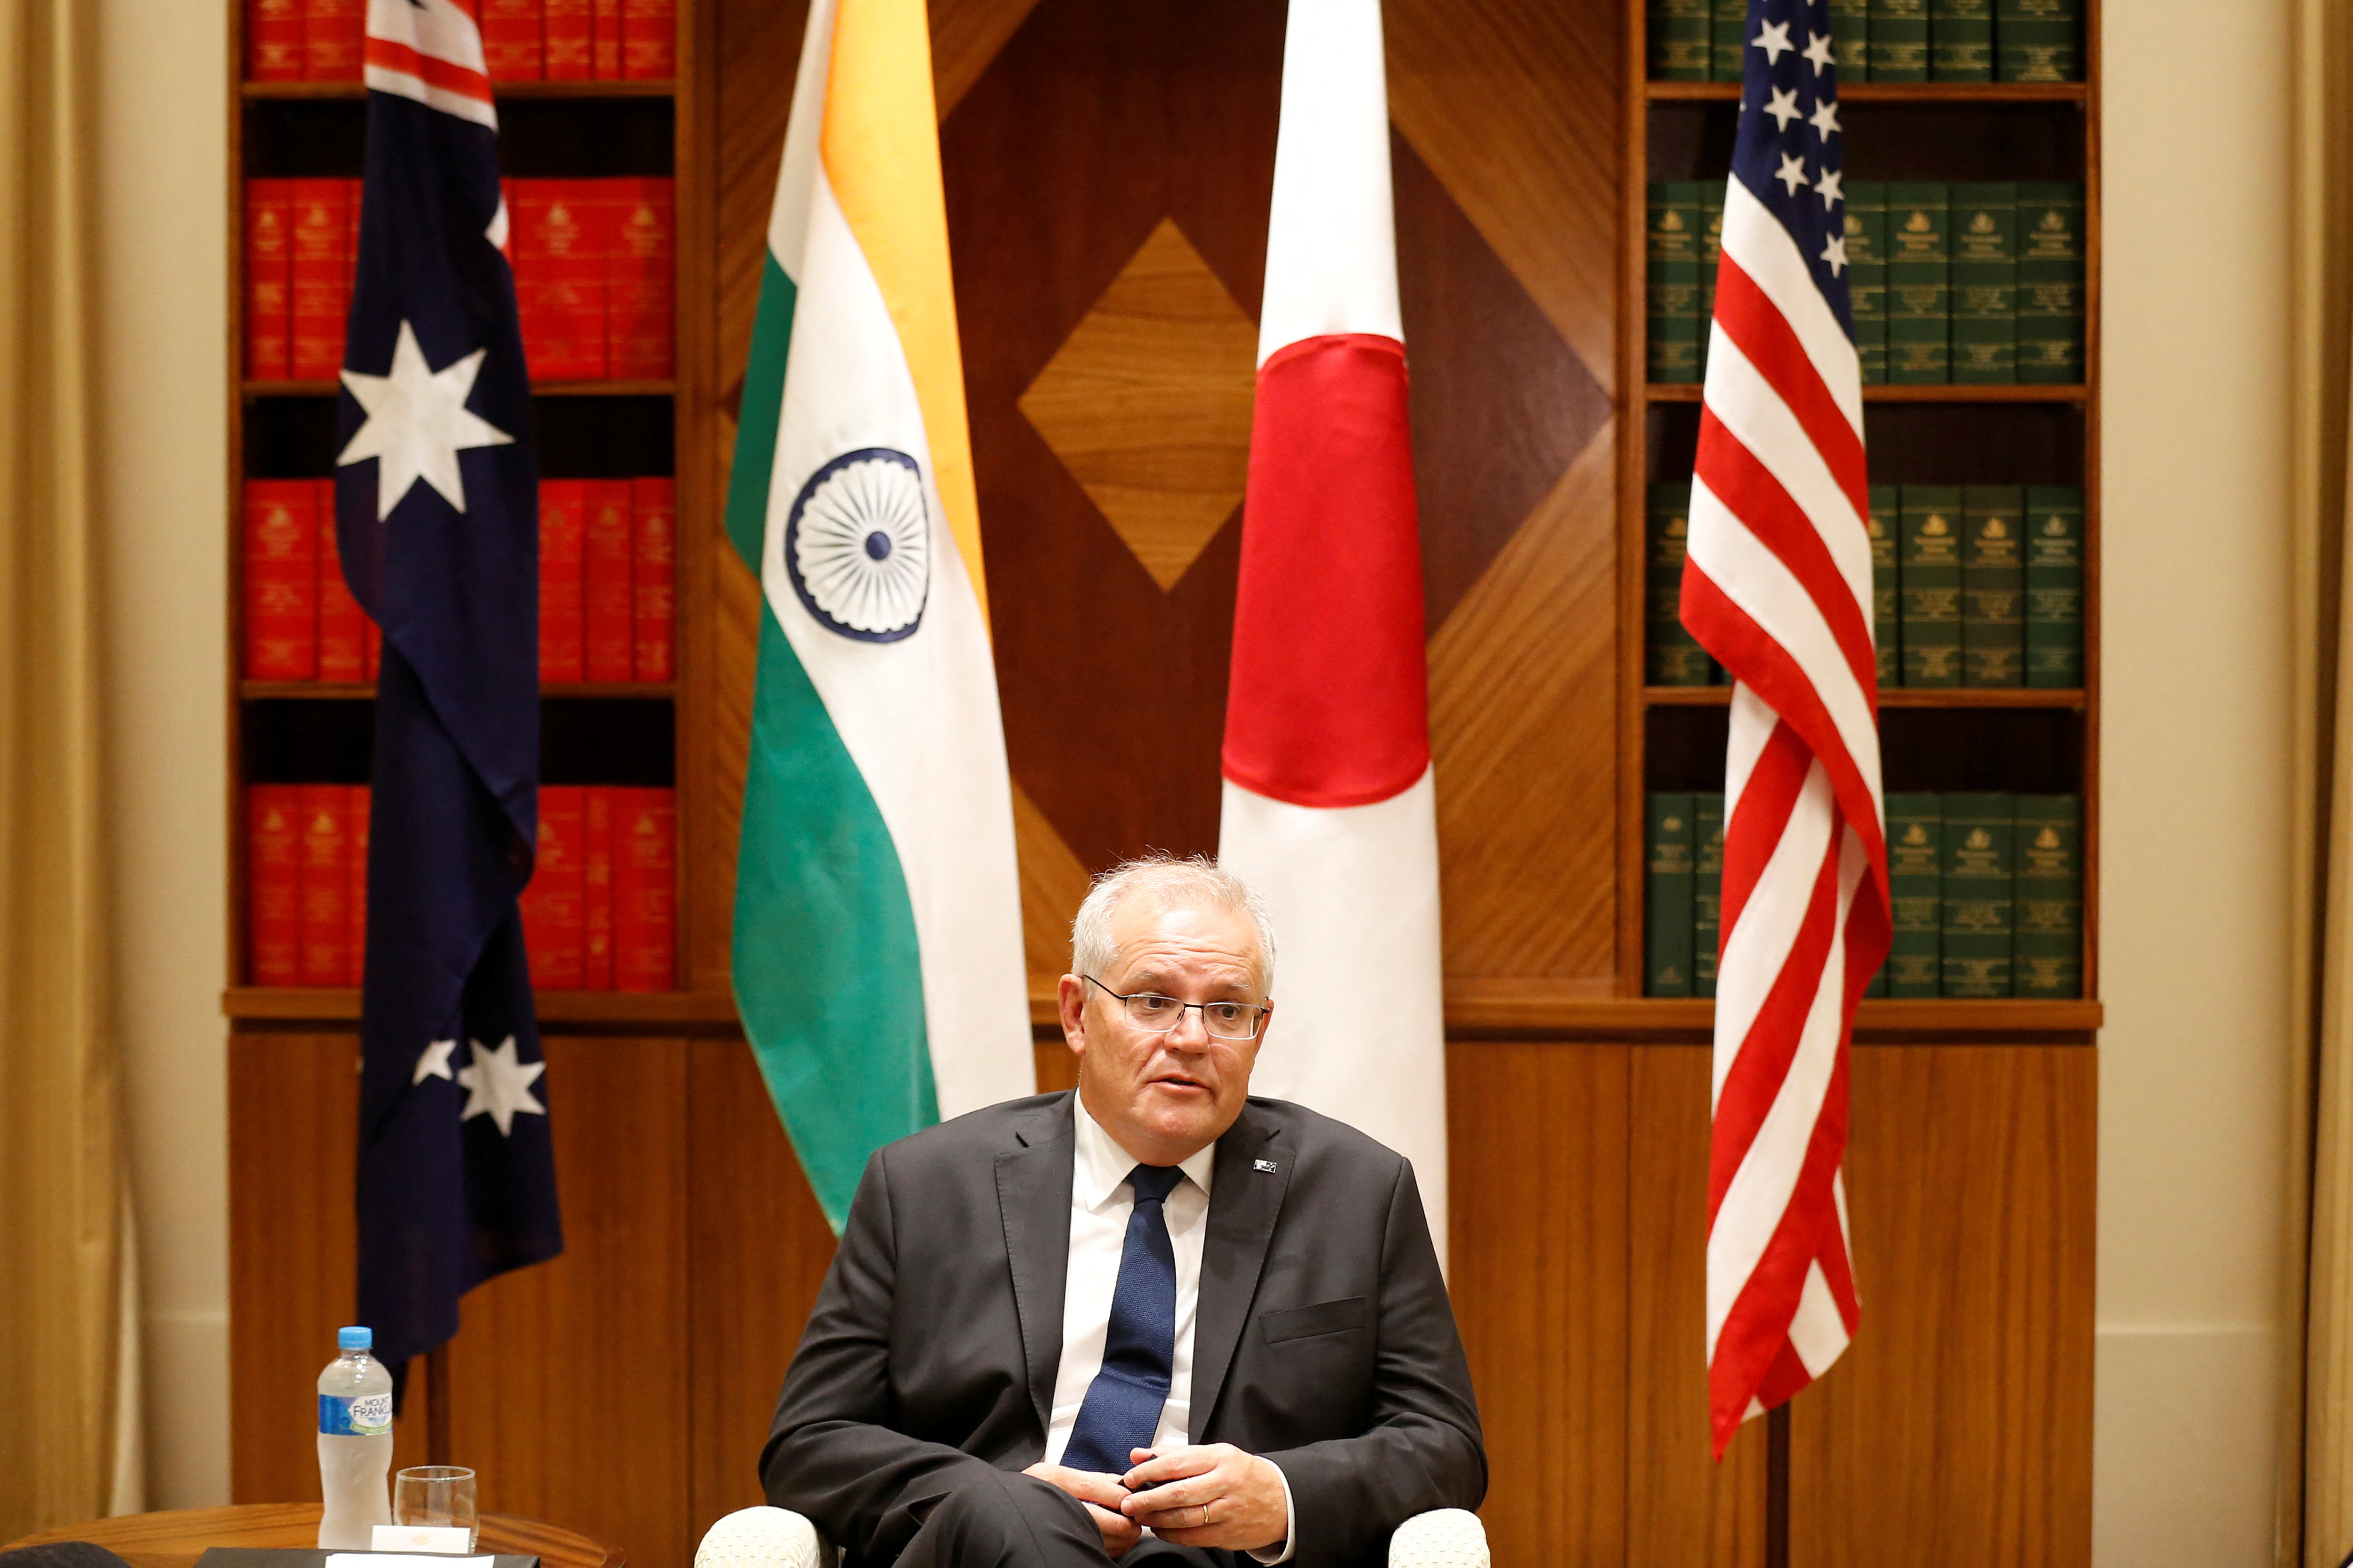 Il primo ministro australiano Scott Morrison parla ai media presso l'Ufficio del Parlamento del Commonwealth a Melbourne, Australia, 11 febbraio 2022. Darrian Traynor/Pool via REUTERS